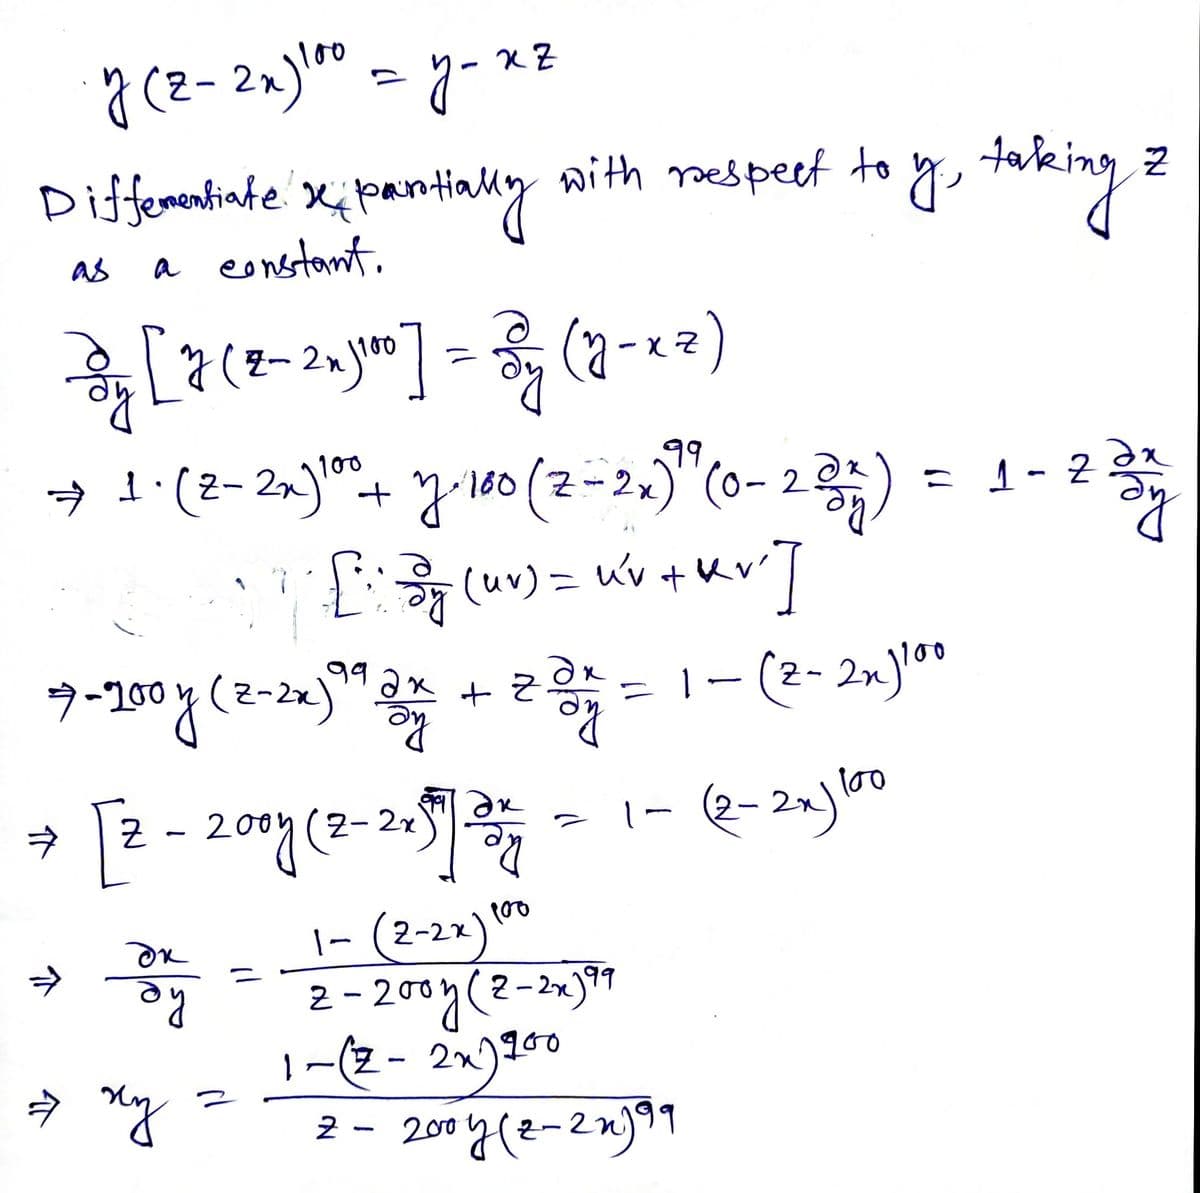 y (2- 2x)" - y-xz
Diffemetinte Xi pantialy to yo taking z
a eonstont.
with nespeet
as
- x 2)
%3D
→ 1.(2- 2,)"+ J-100(2-2,)"(0- 2
99
= 1-2
十人
%3D
7-200y (2-22)"
+ * = 1- (2- 2%]lo0
2-2n
- 2007 (2-205)
l00
1-
|- (2-22)"
2 - 200y(2-21)9
1-(2 - 2)150
900
2 - 200 y(2-2n)*1
介
